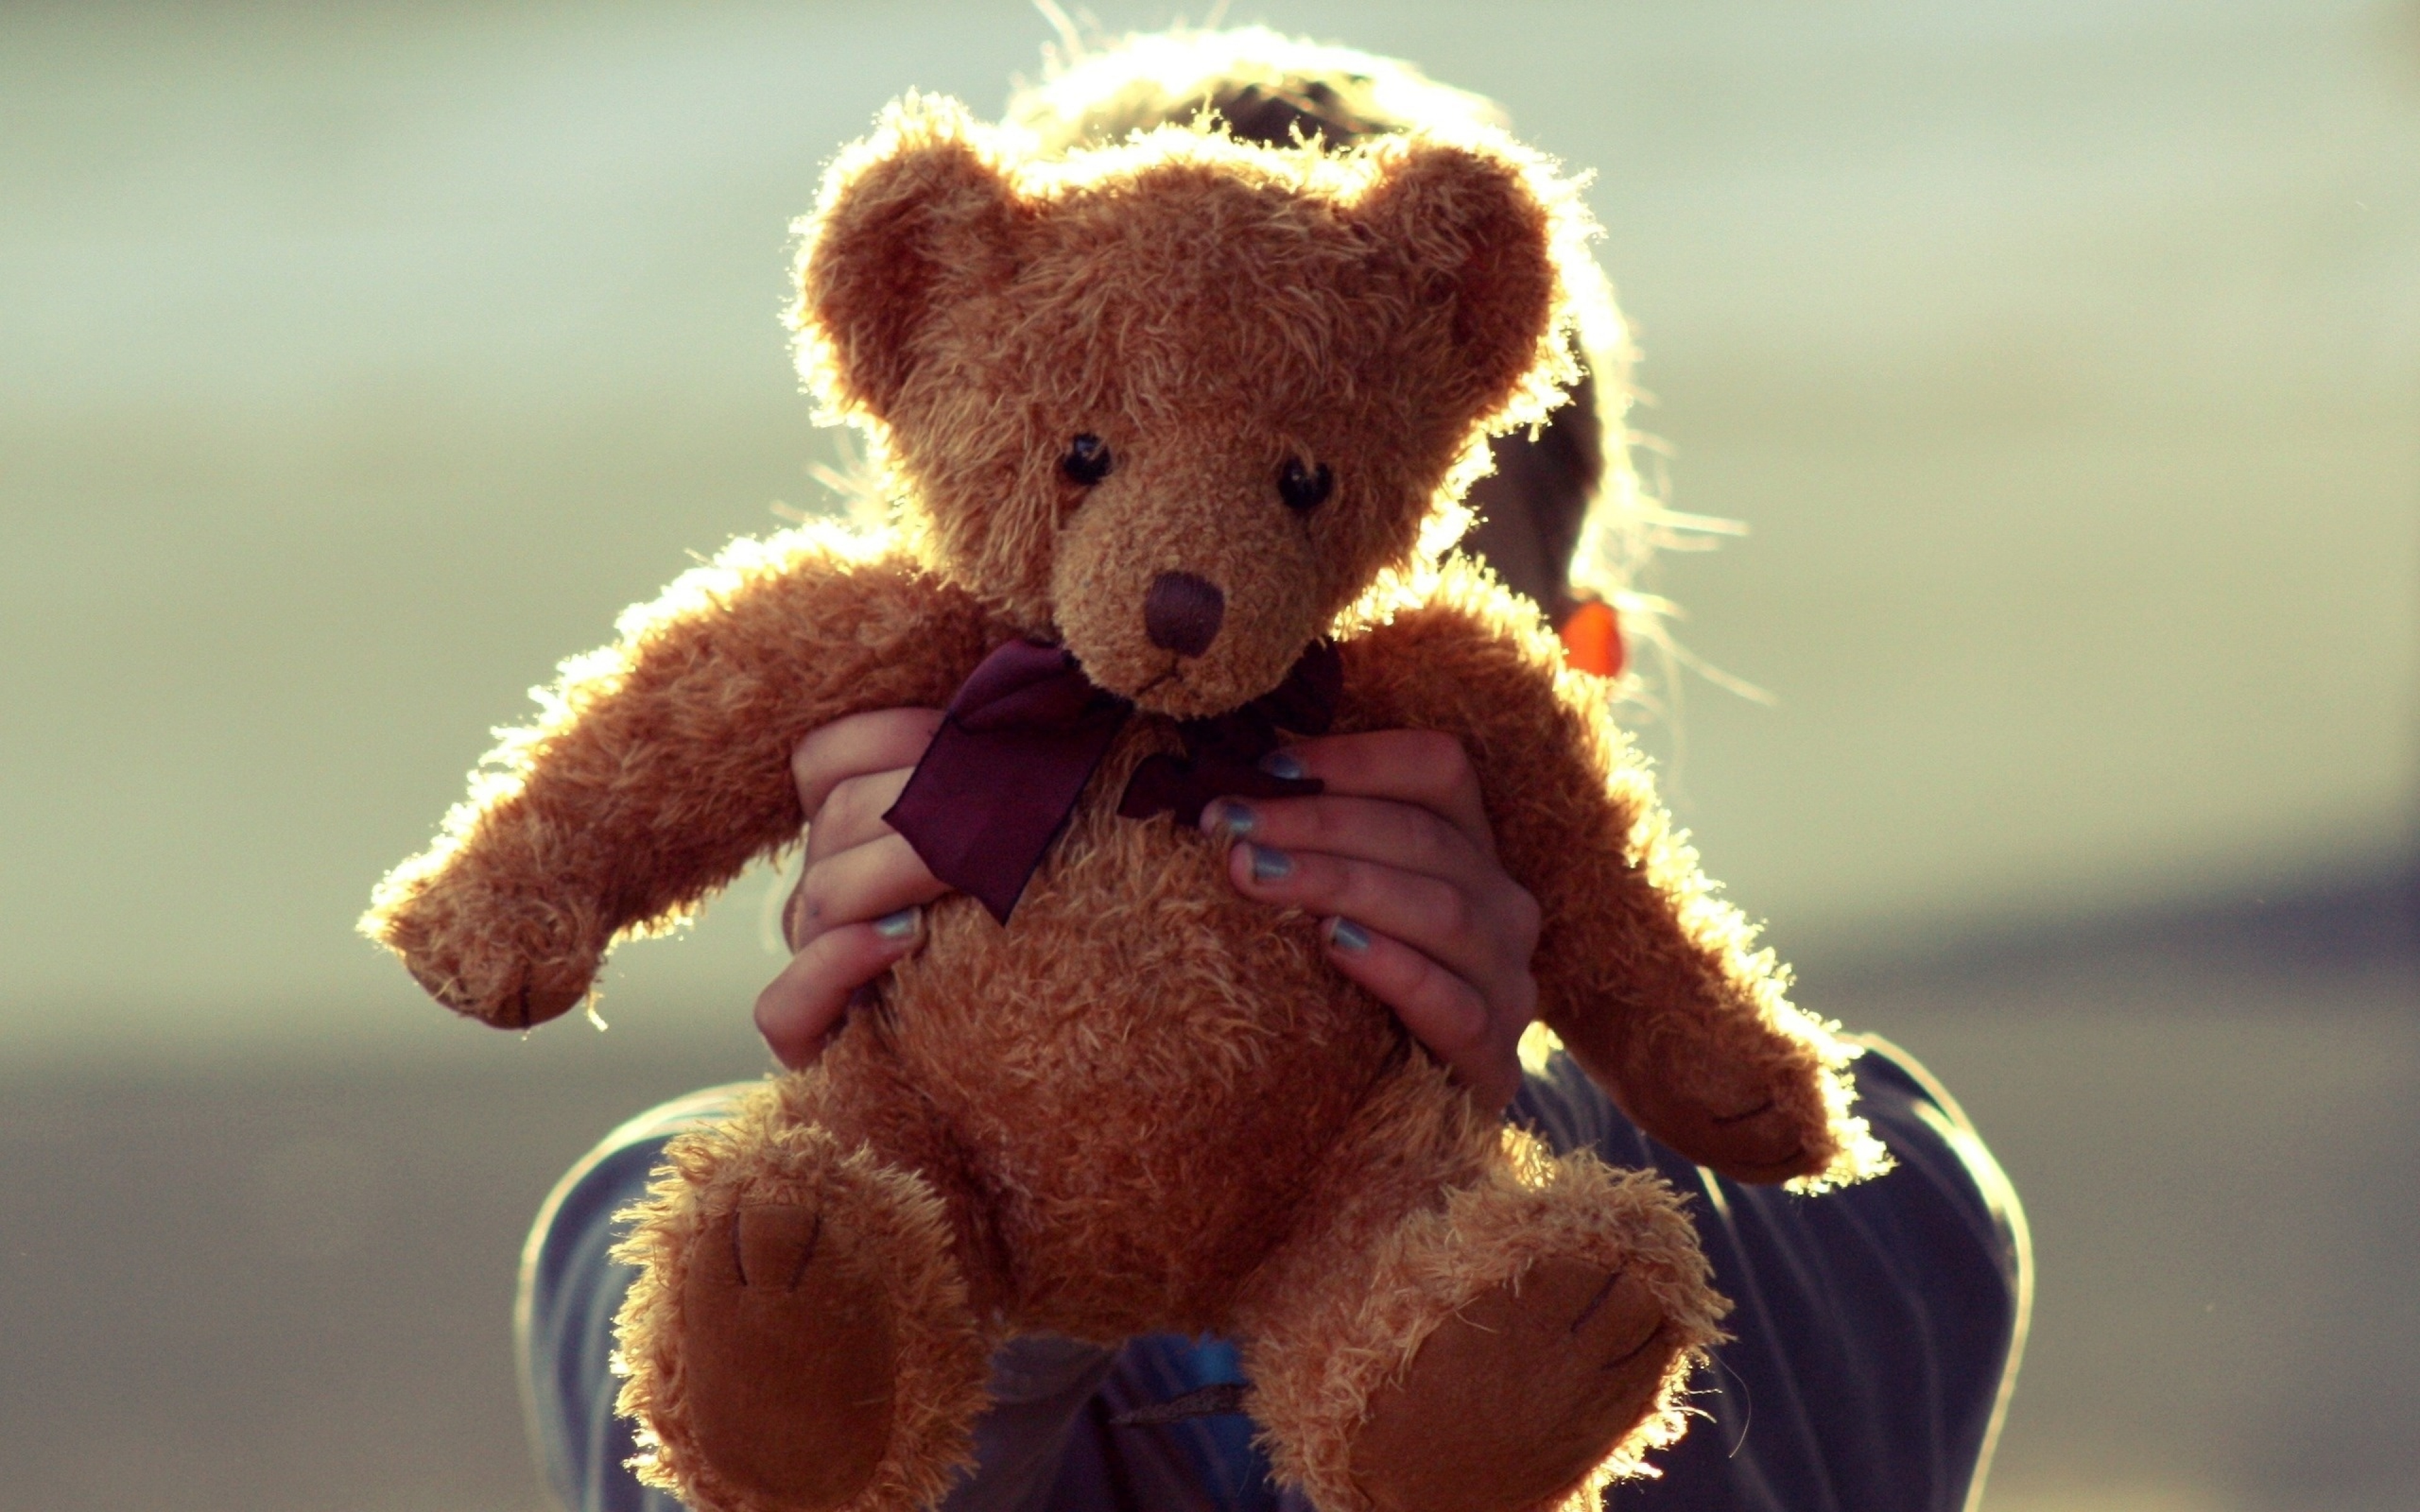 Teddy bear teddy bear turn around. Плюшевый мишка. Красивые игрушки. Плюшевые игрушки. Плюшевая игрушка медведь.